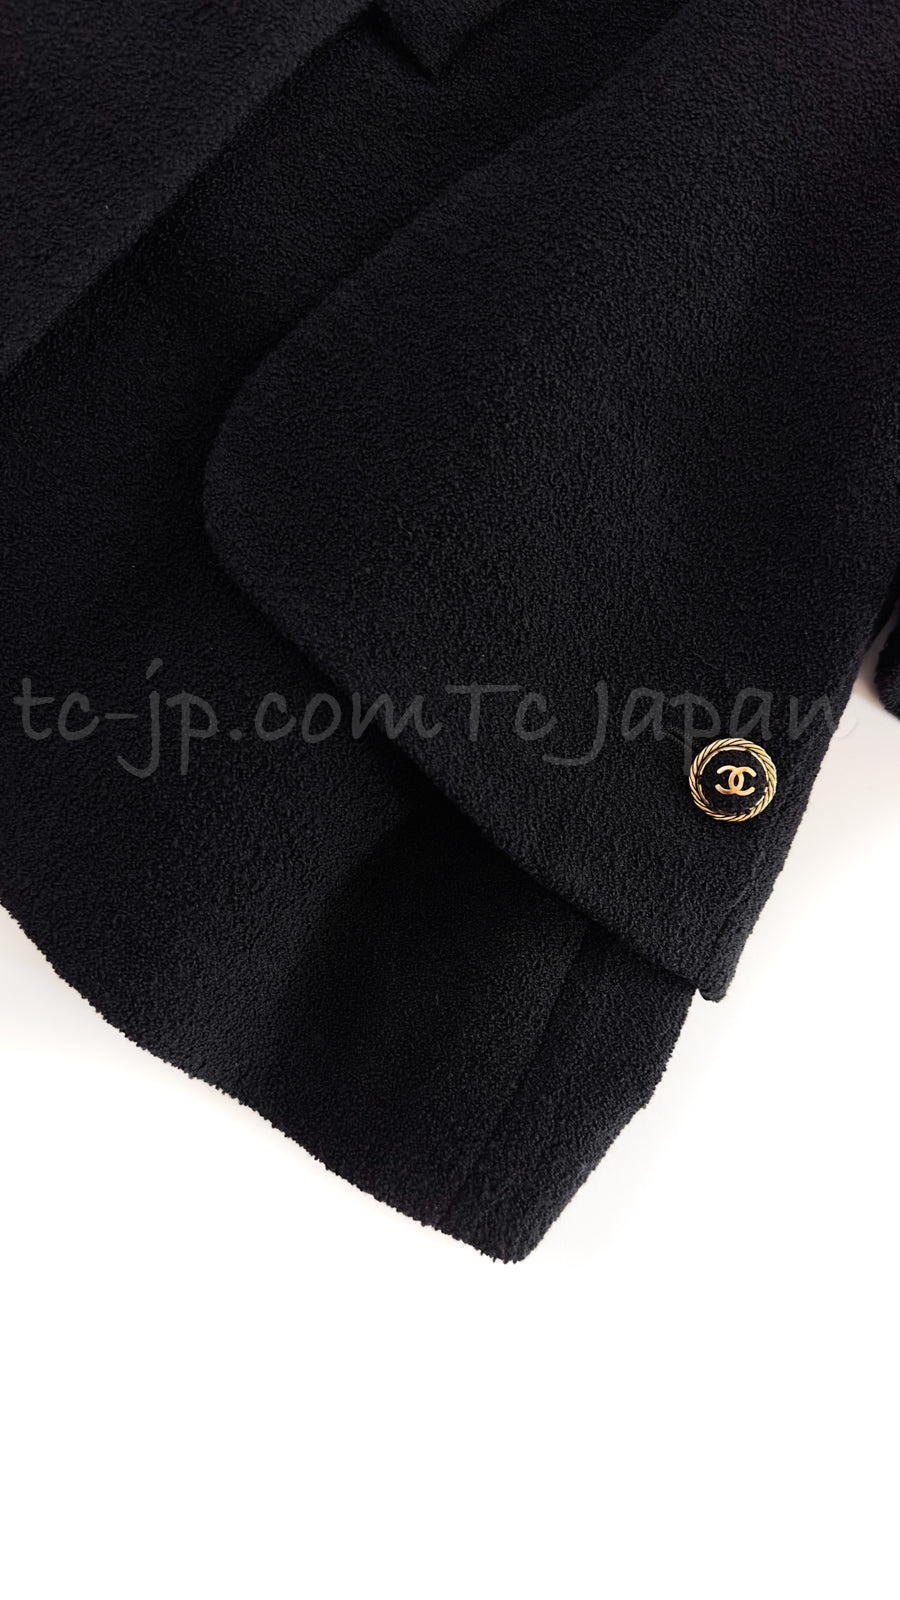 CHANEL 07S Black CC Logo Button Tweed Jacket Skirt Suit 46 シャネル  ブラック・CCロゴボタン・ツイード・ジャケット・スカート・スーツ 即発